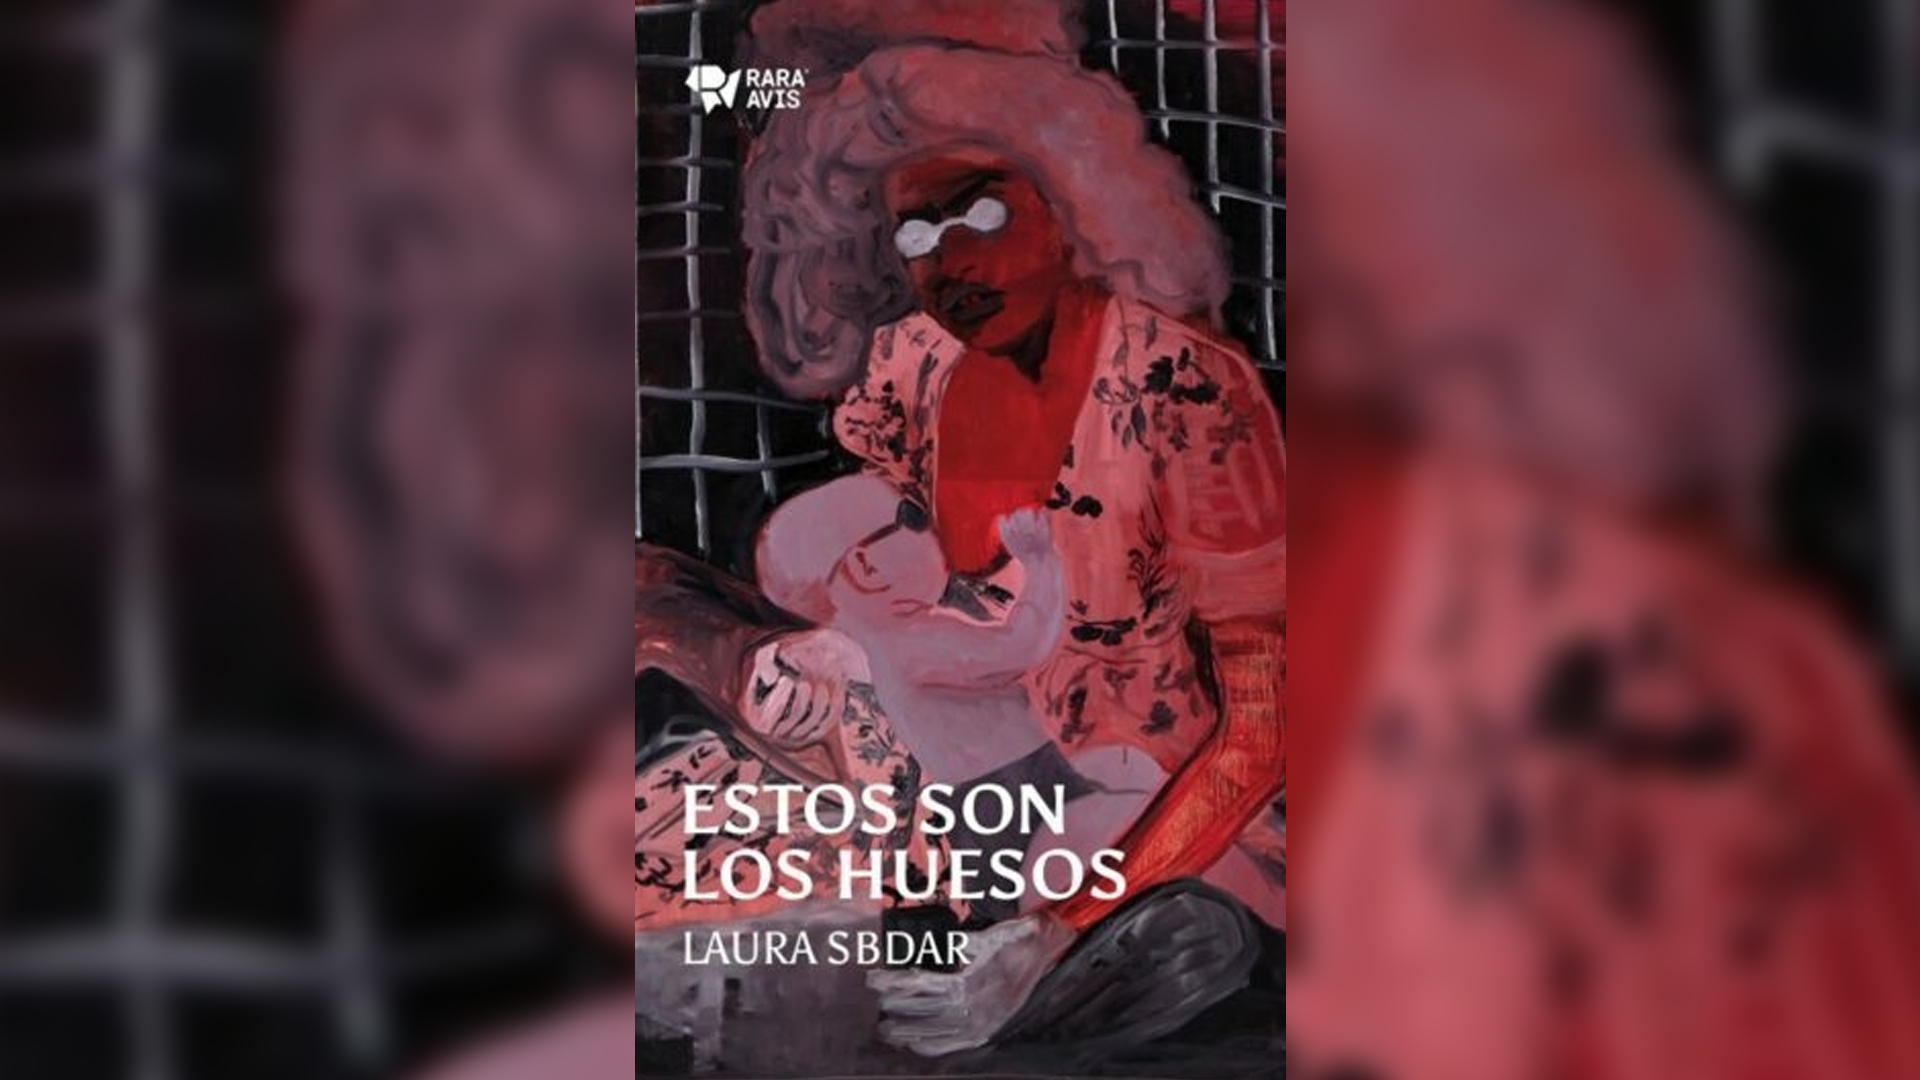 Rara Avis publicó "Estos son los huesos", de Laura Sbdar, que reúne sus obras teatrales